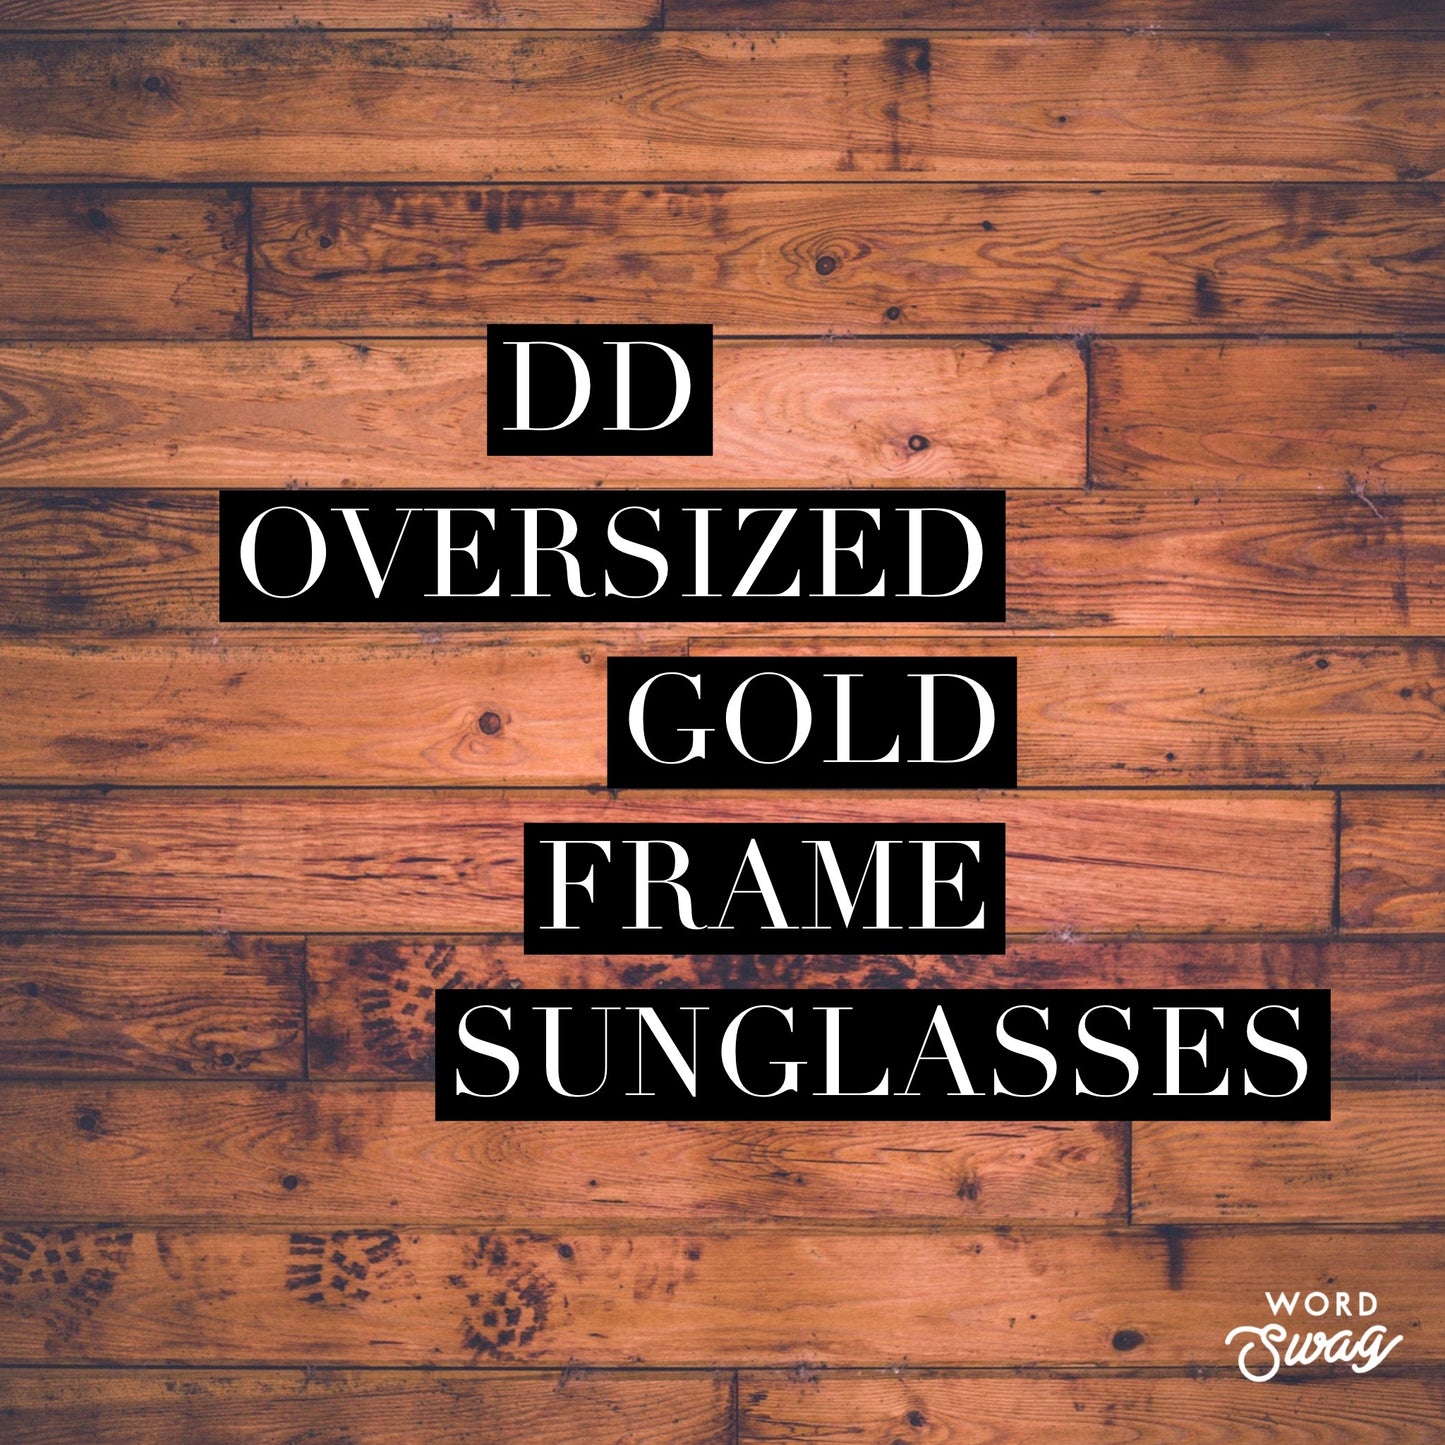 DD Oversized Gold Frame Sunglasses